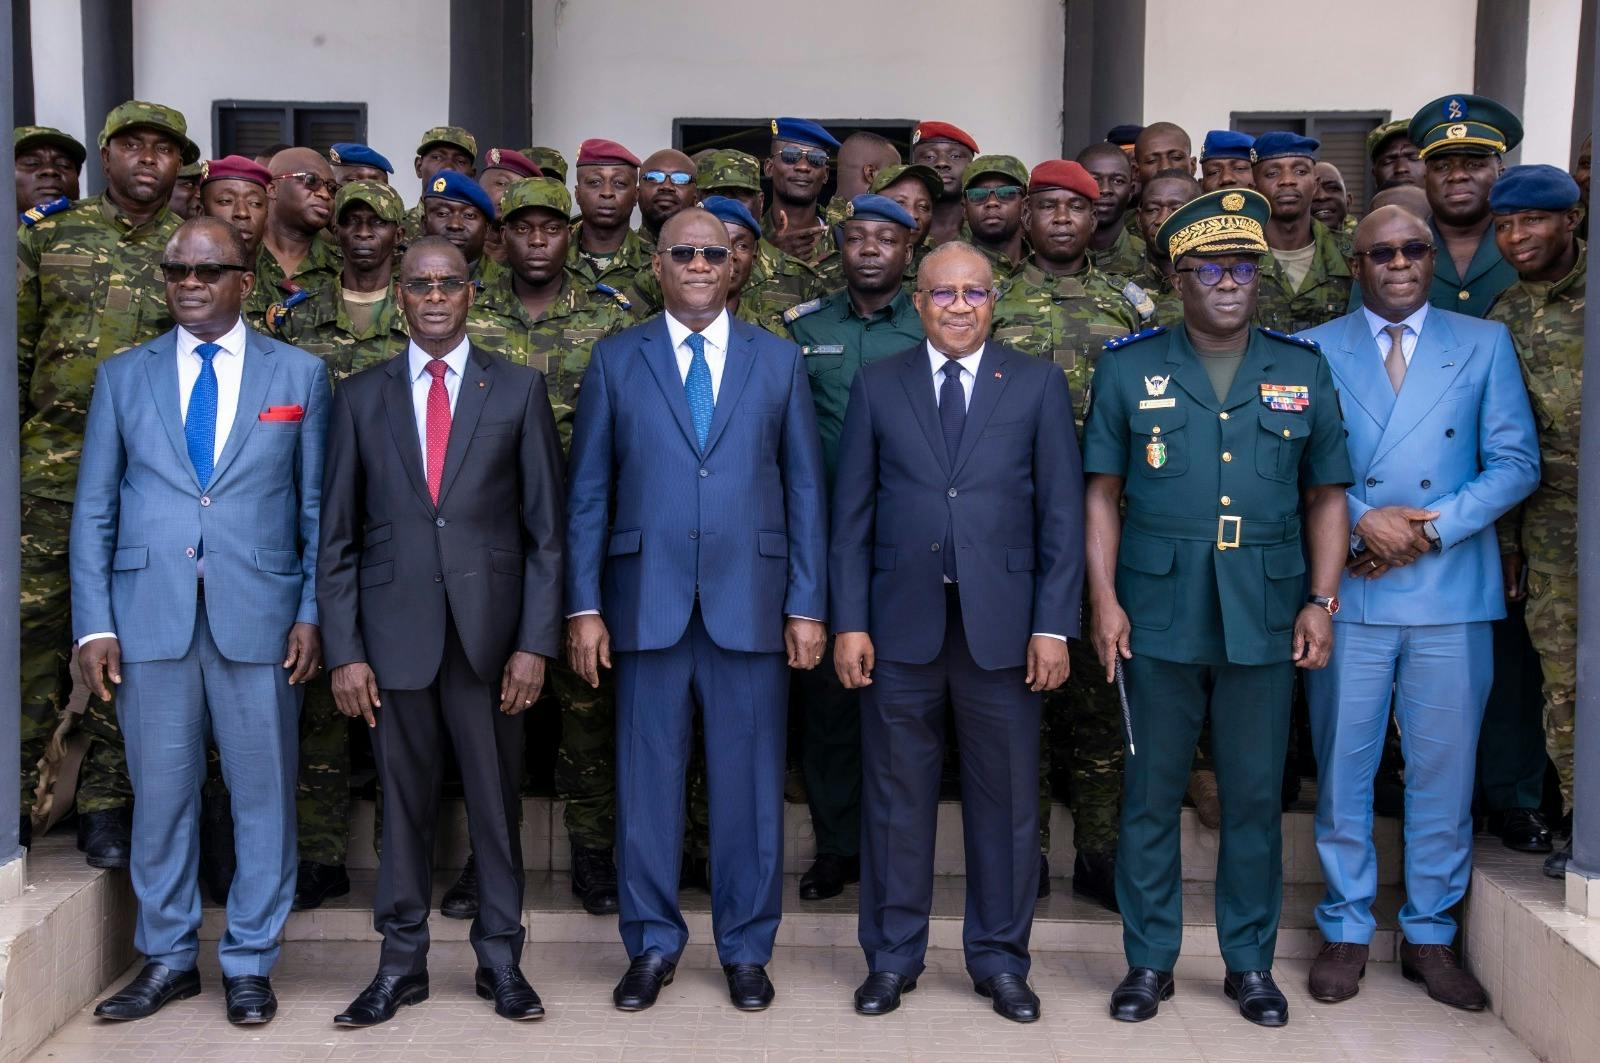 Armée de Côte-d’Ivoire : 305 militaires quittent les rangs pour intégrer les Affaires Maritimes (117), les Eaux et Forêts (128), la garde pénitentiaire (4) et 56 admis à la retraite volontaire